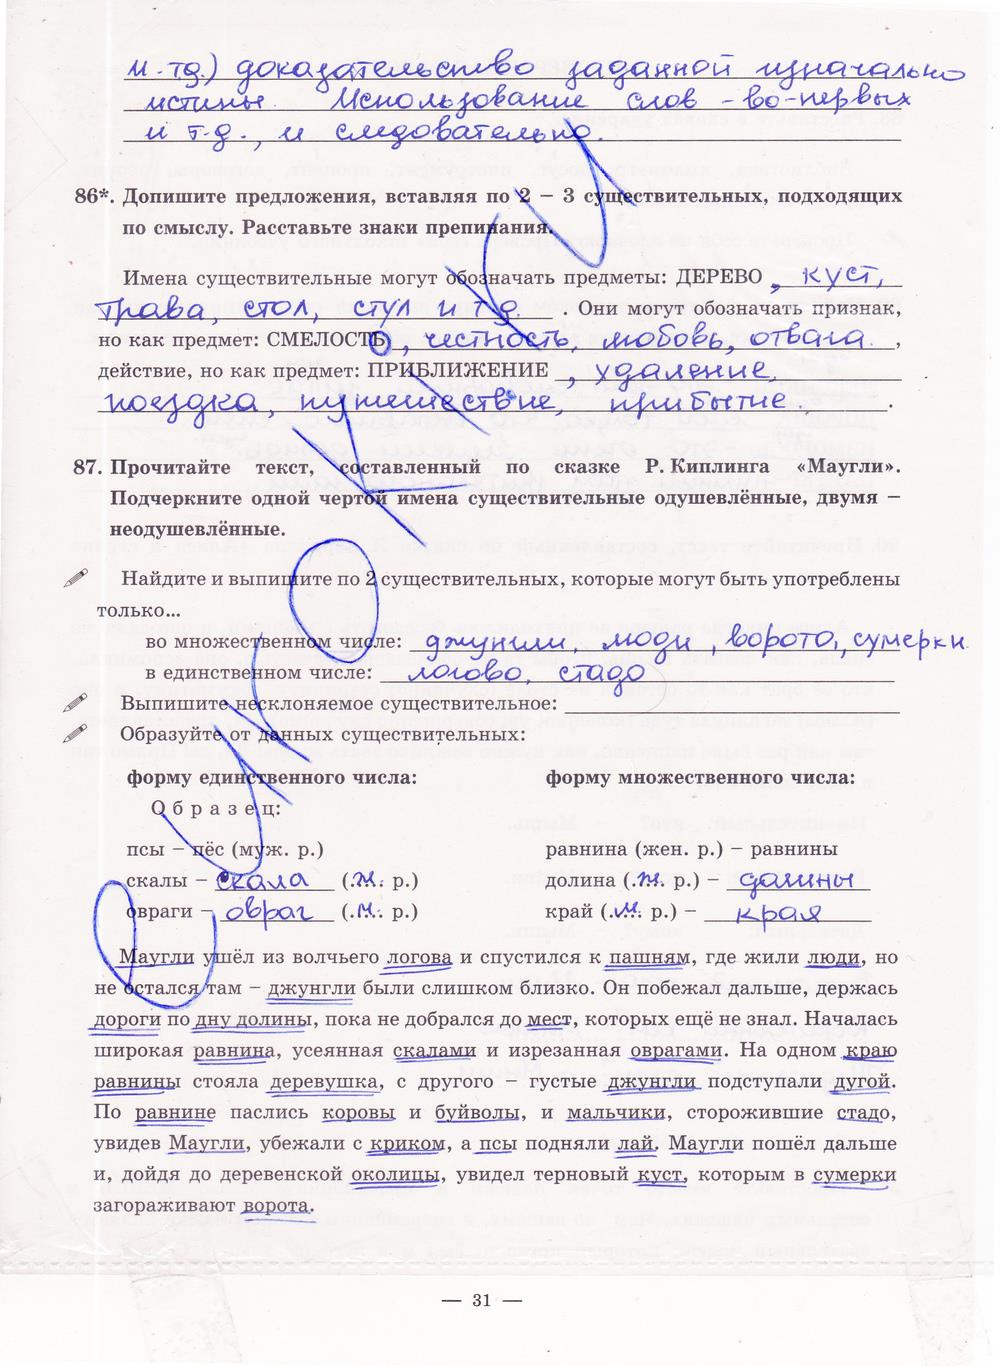 гдз 5 класс рабочая тетрадь часть 2 страница 31 русский язык Богданова